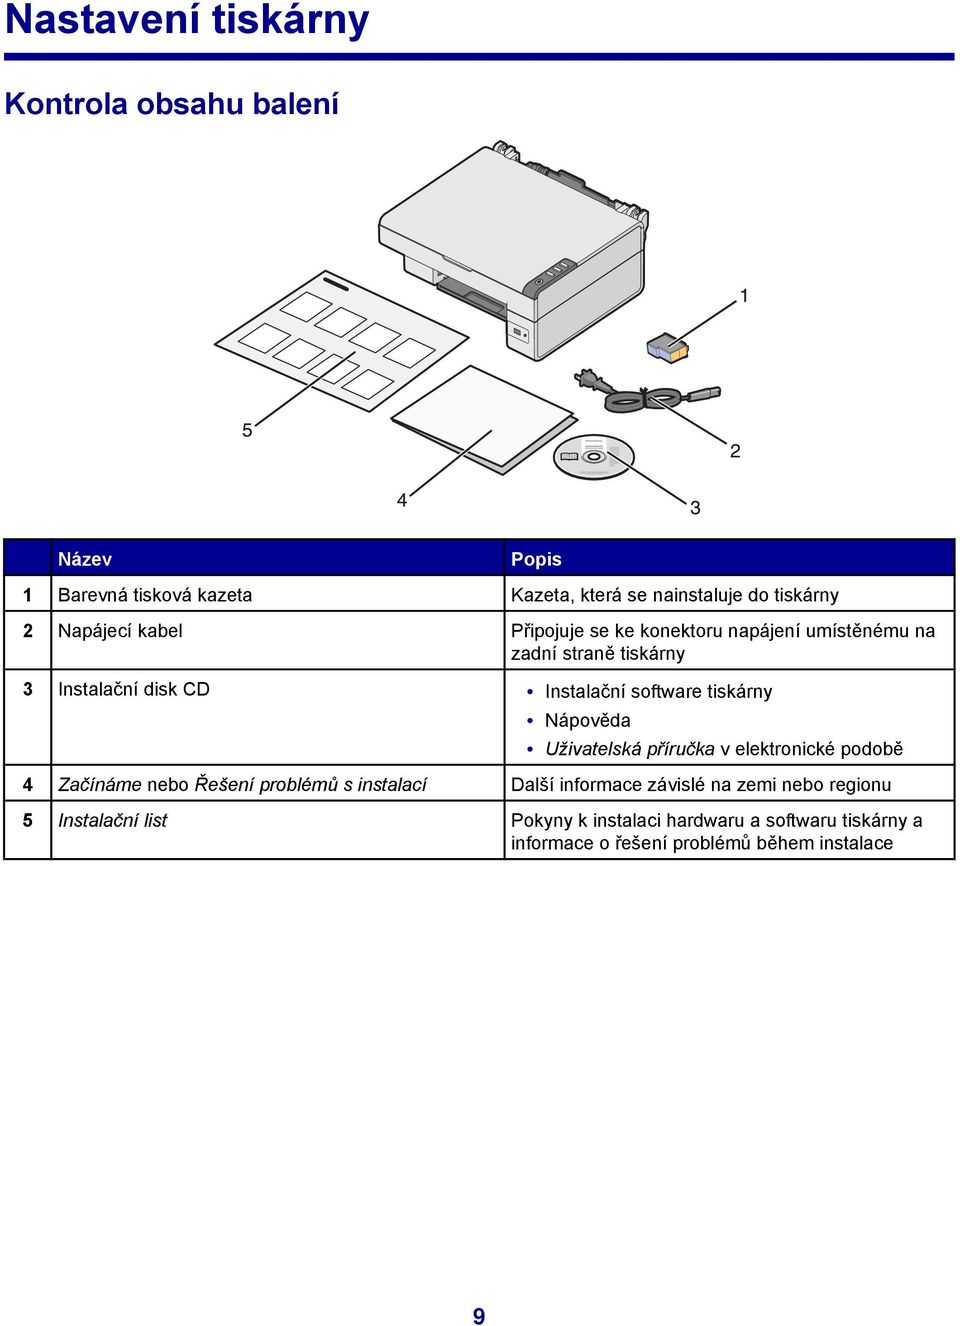 tiskárny Nápověda Uživatelská příručka v elektronické podobě 4 Začínáme nebo Řešení problémů s instalací Další informace